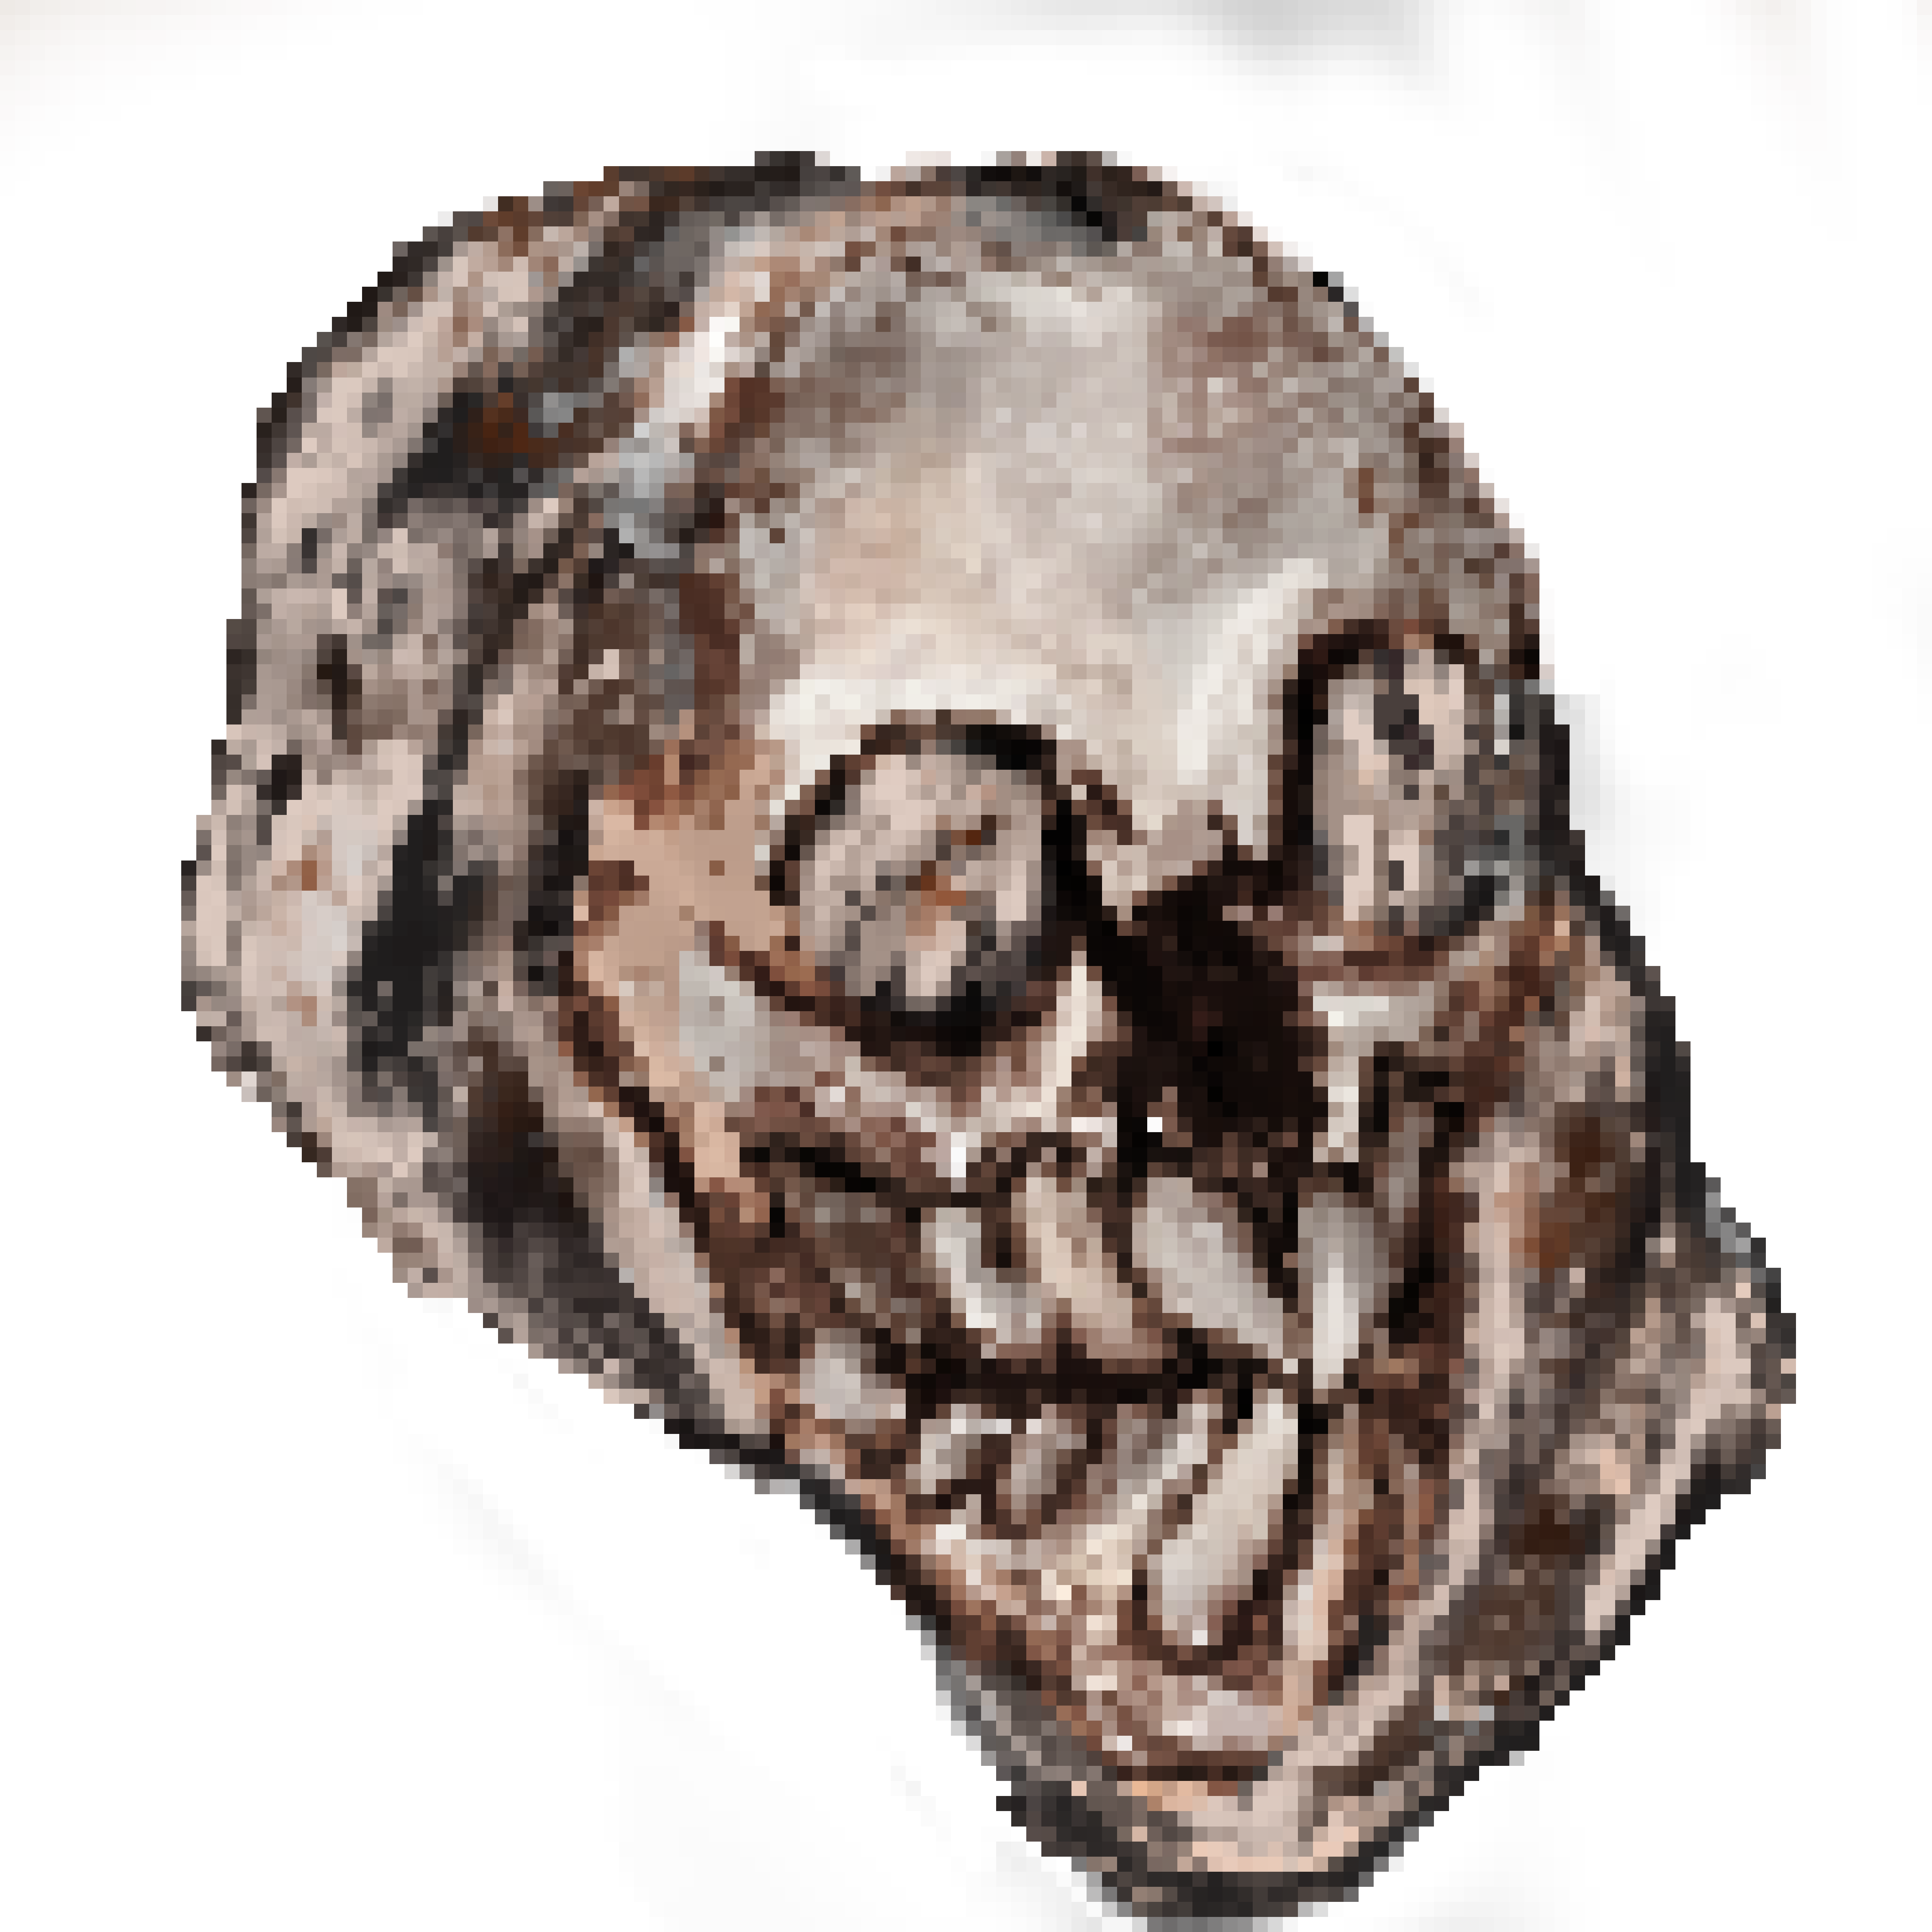 Fossilized Mermaid Skull